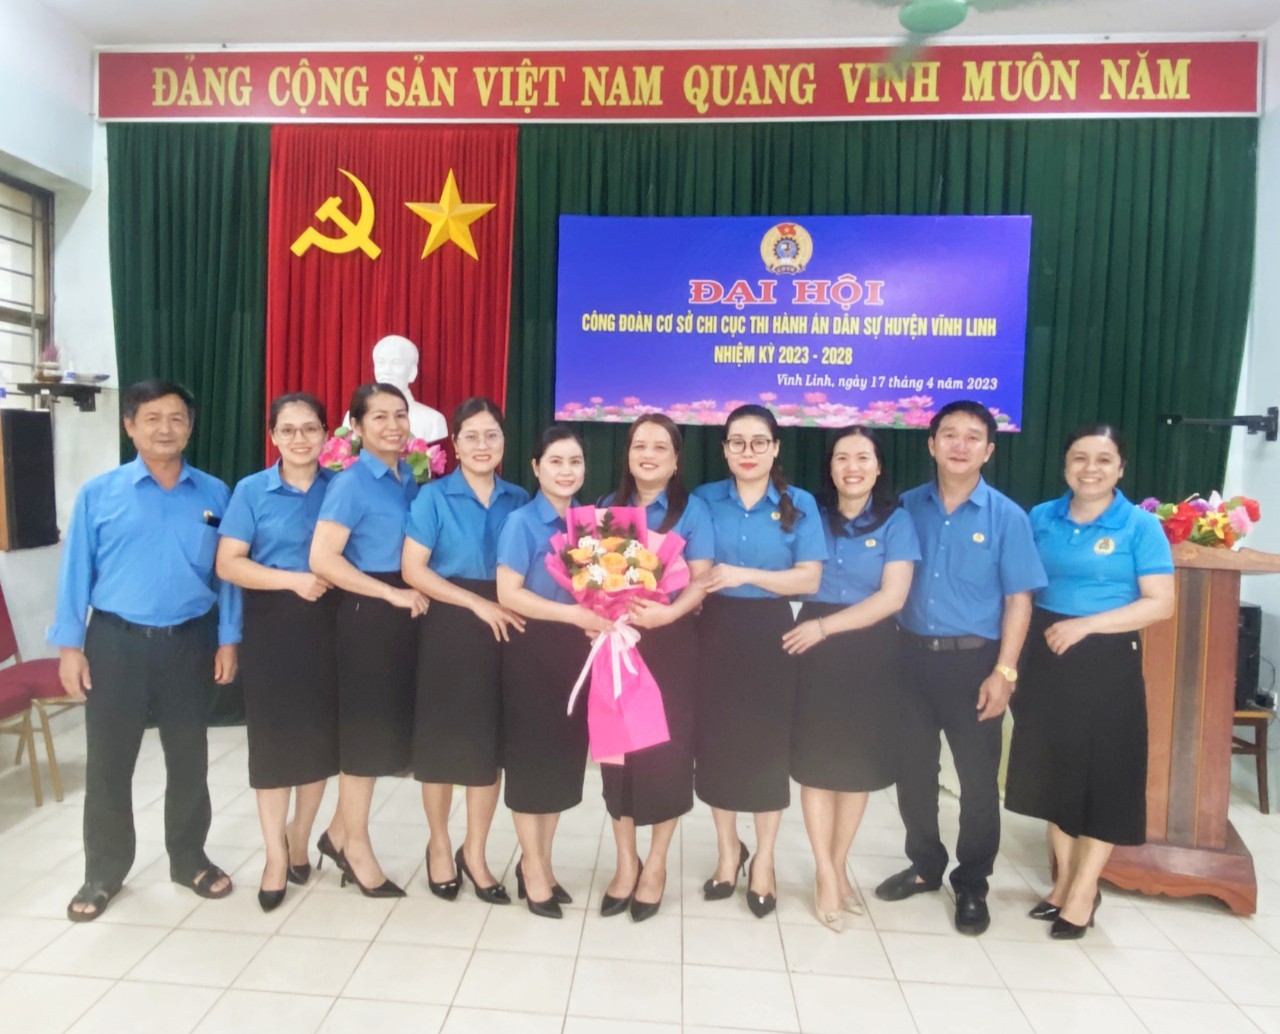 Đại hội Công đoàn cơ sở Chi cục Thi hành án dân sự huyện Vĩnh Linh